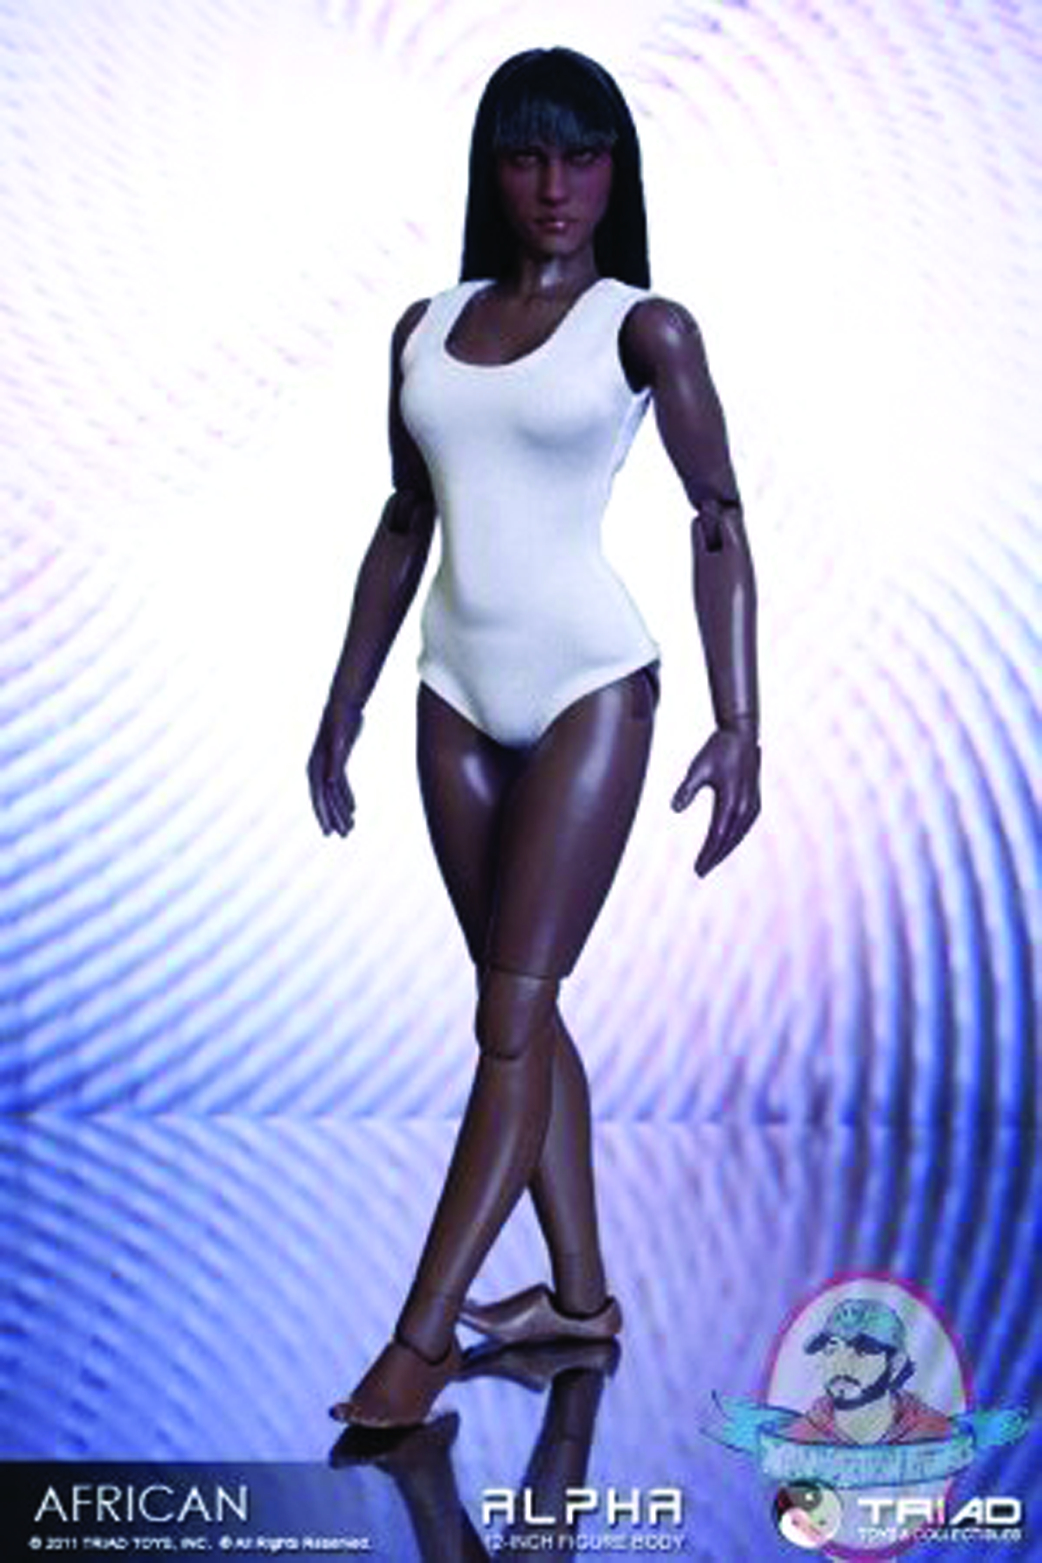 NOV111508 - TRIAD ALPHA AFRICAN AMERICAN FEMALE AF BODY - Previews